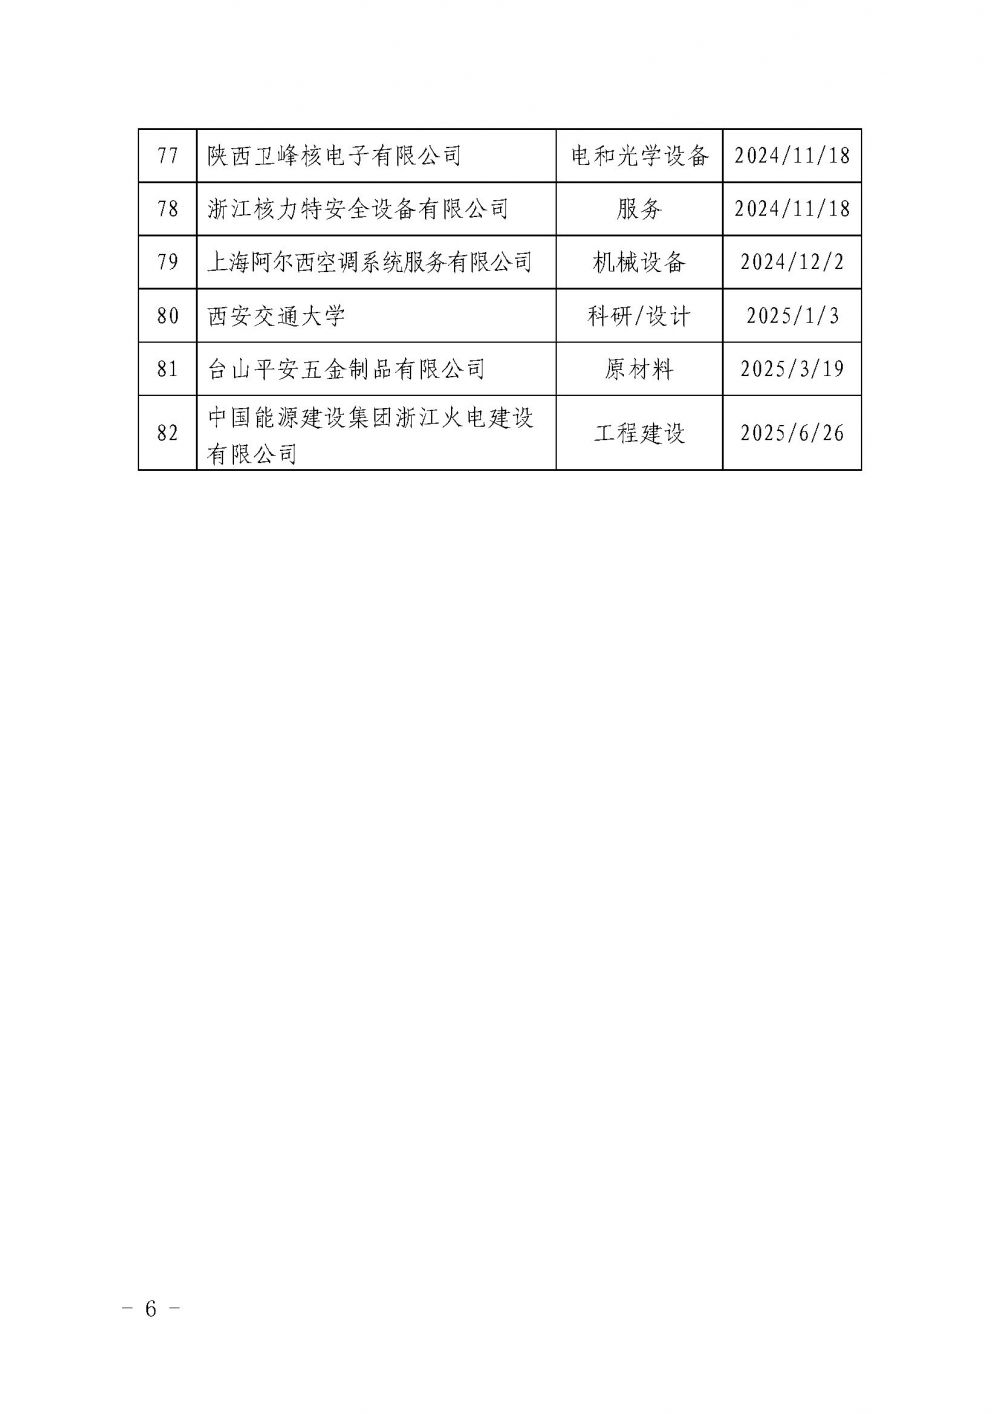 关于发布中国核能行业协会核能行业第十批合格供应商名录的公告_页面_6.jpg